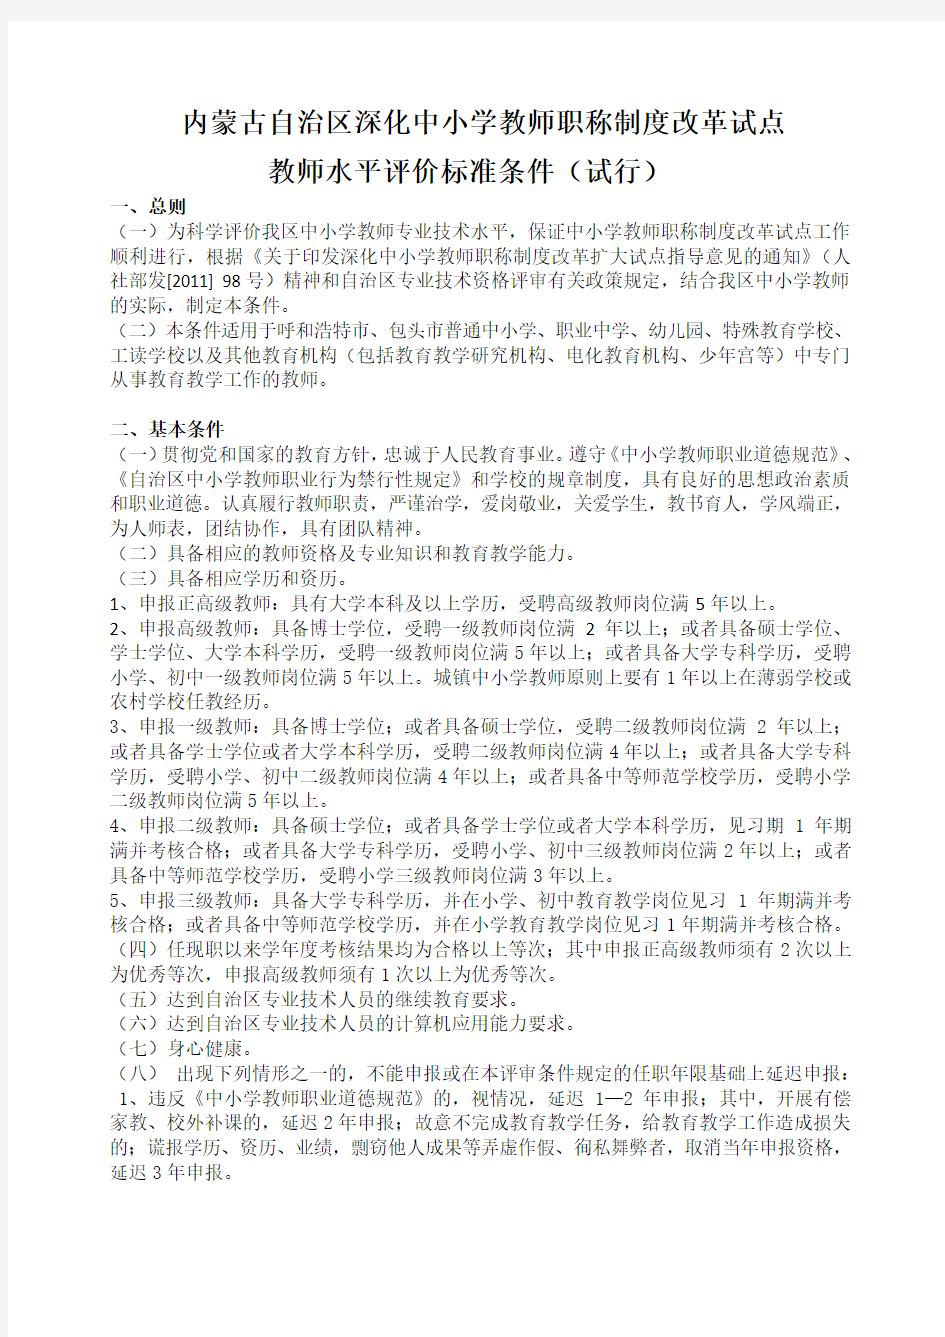 内蒙古自治区深化中小学教师职称制度改革试点教师水平评价标准条件(试行)